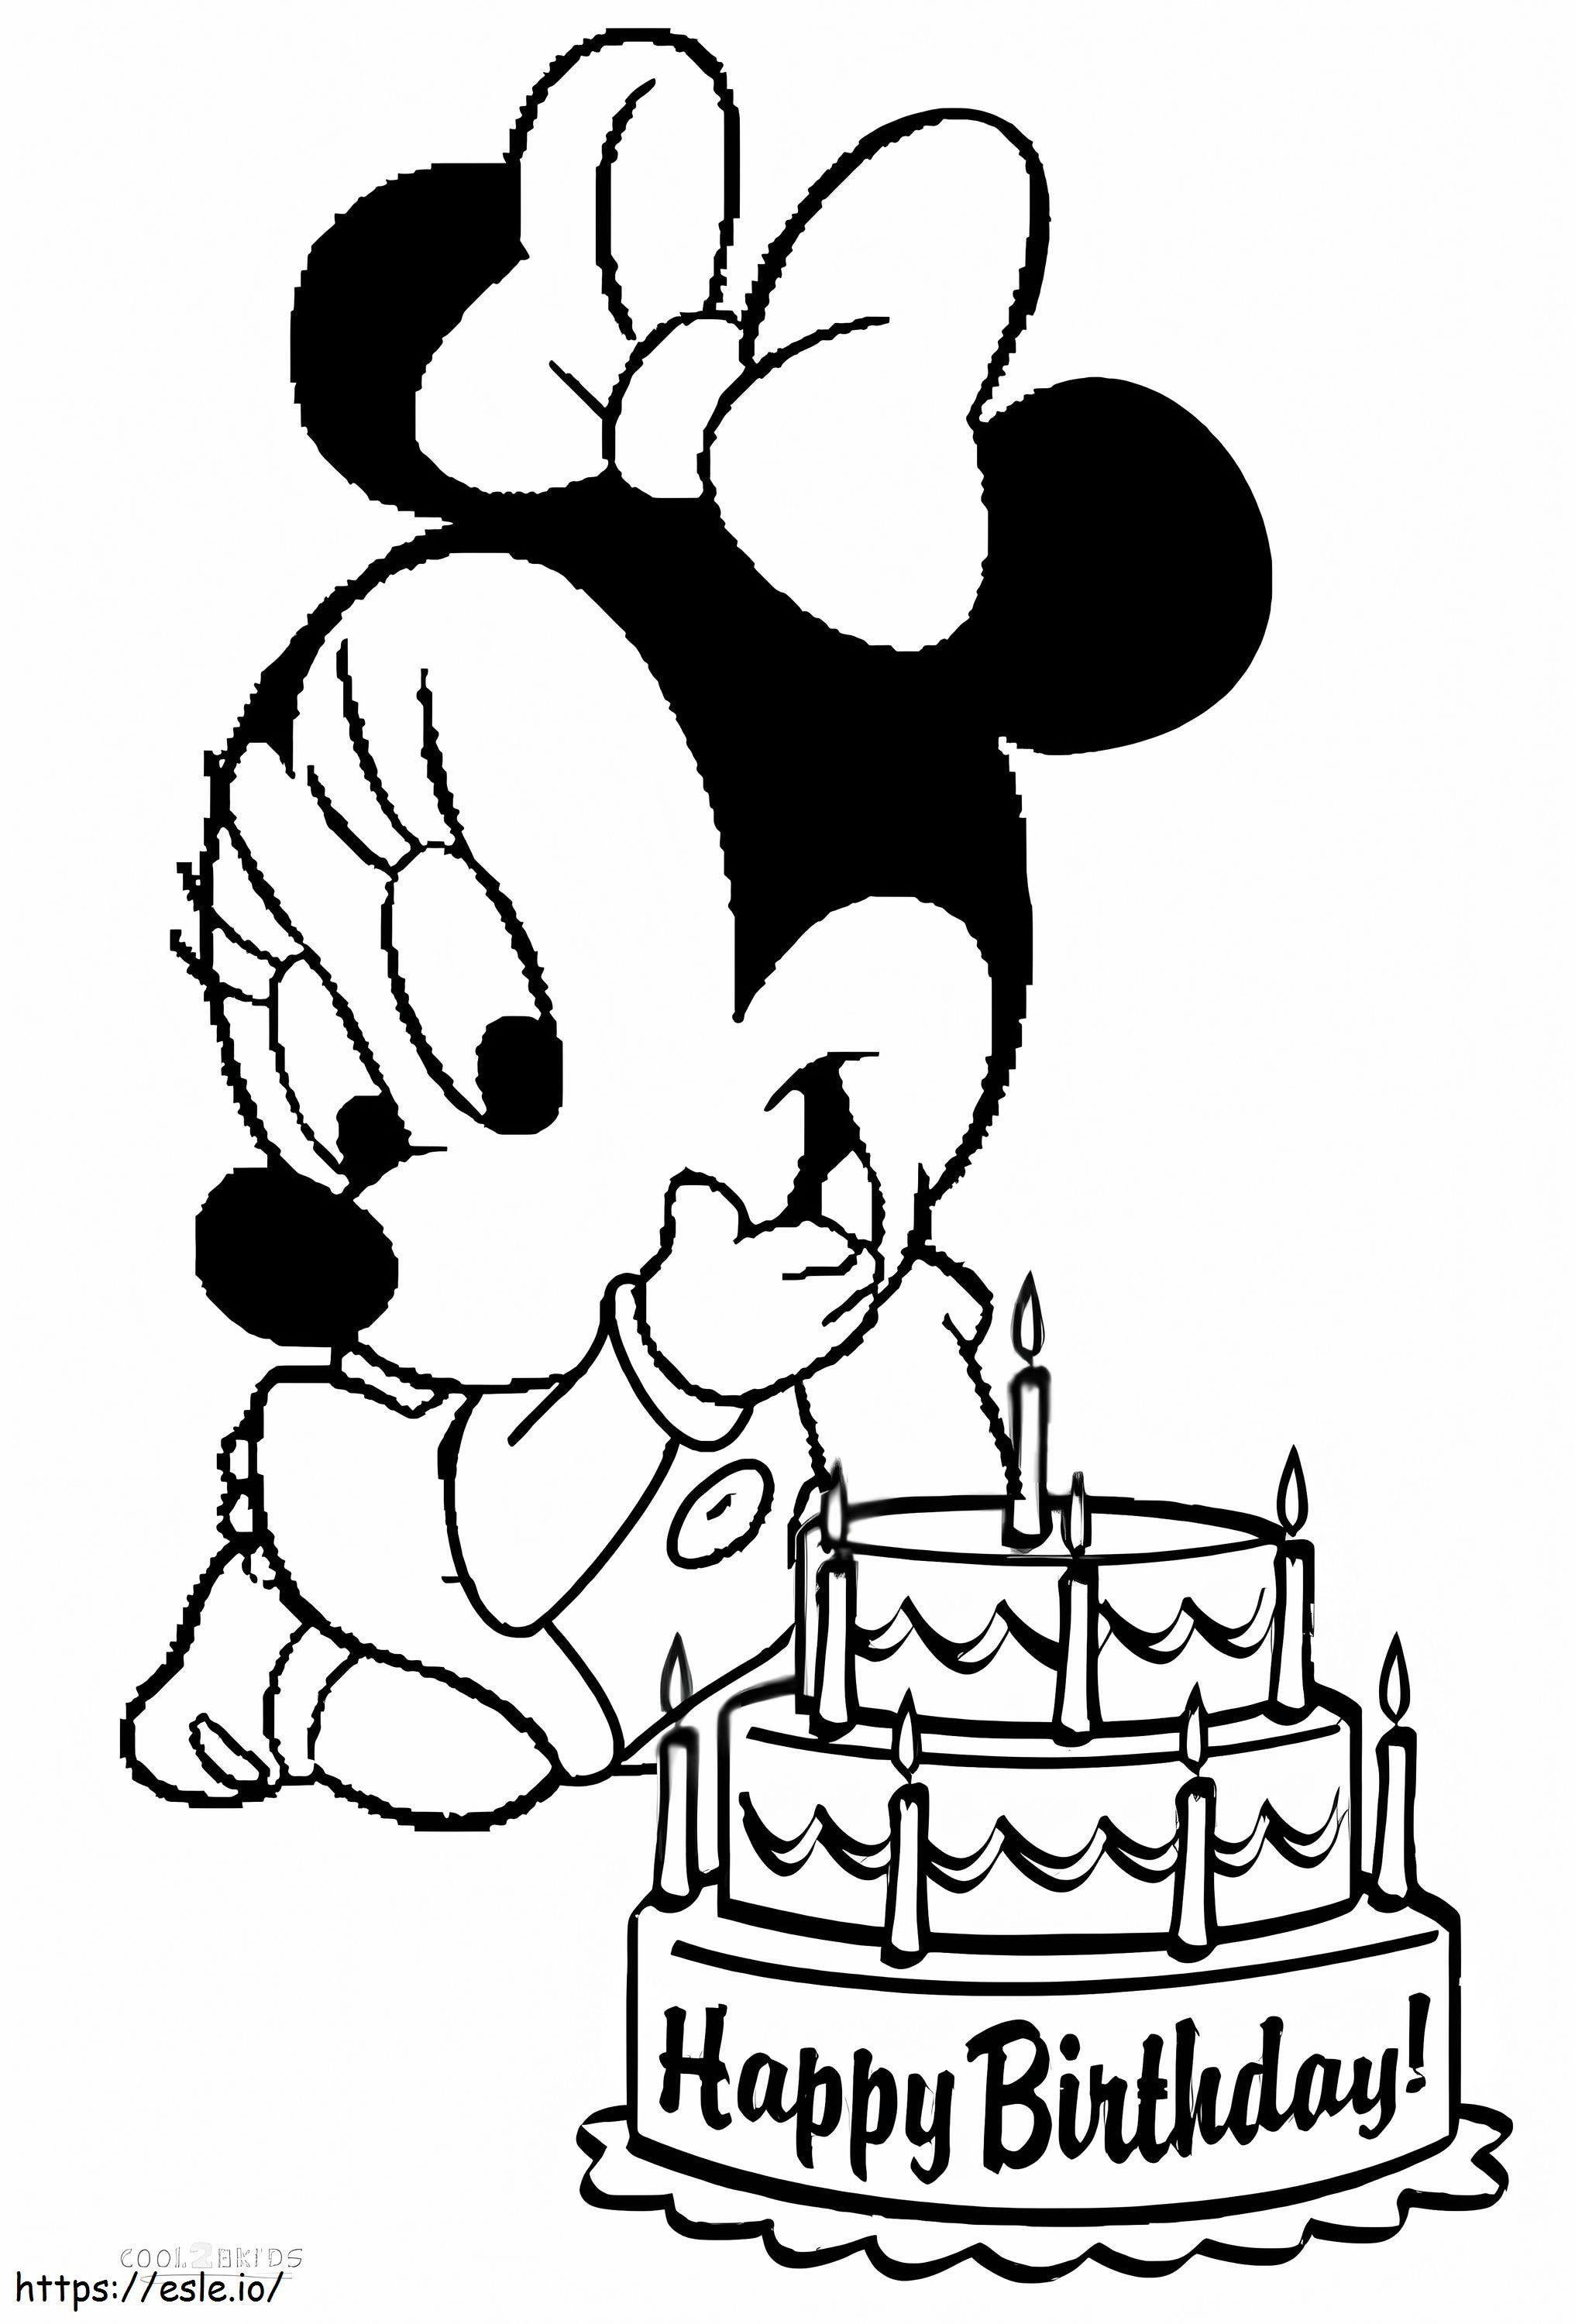 Baby Minnie Mouse e torta di compleanno da colorare